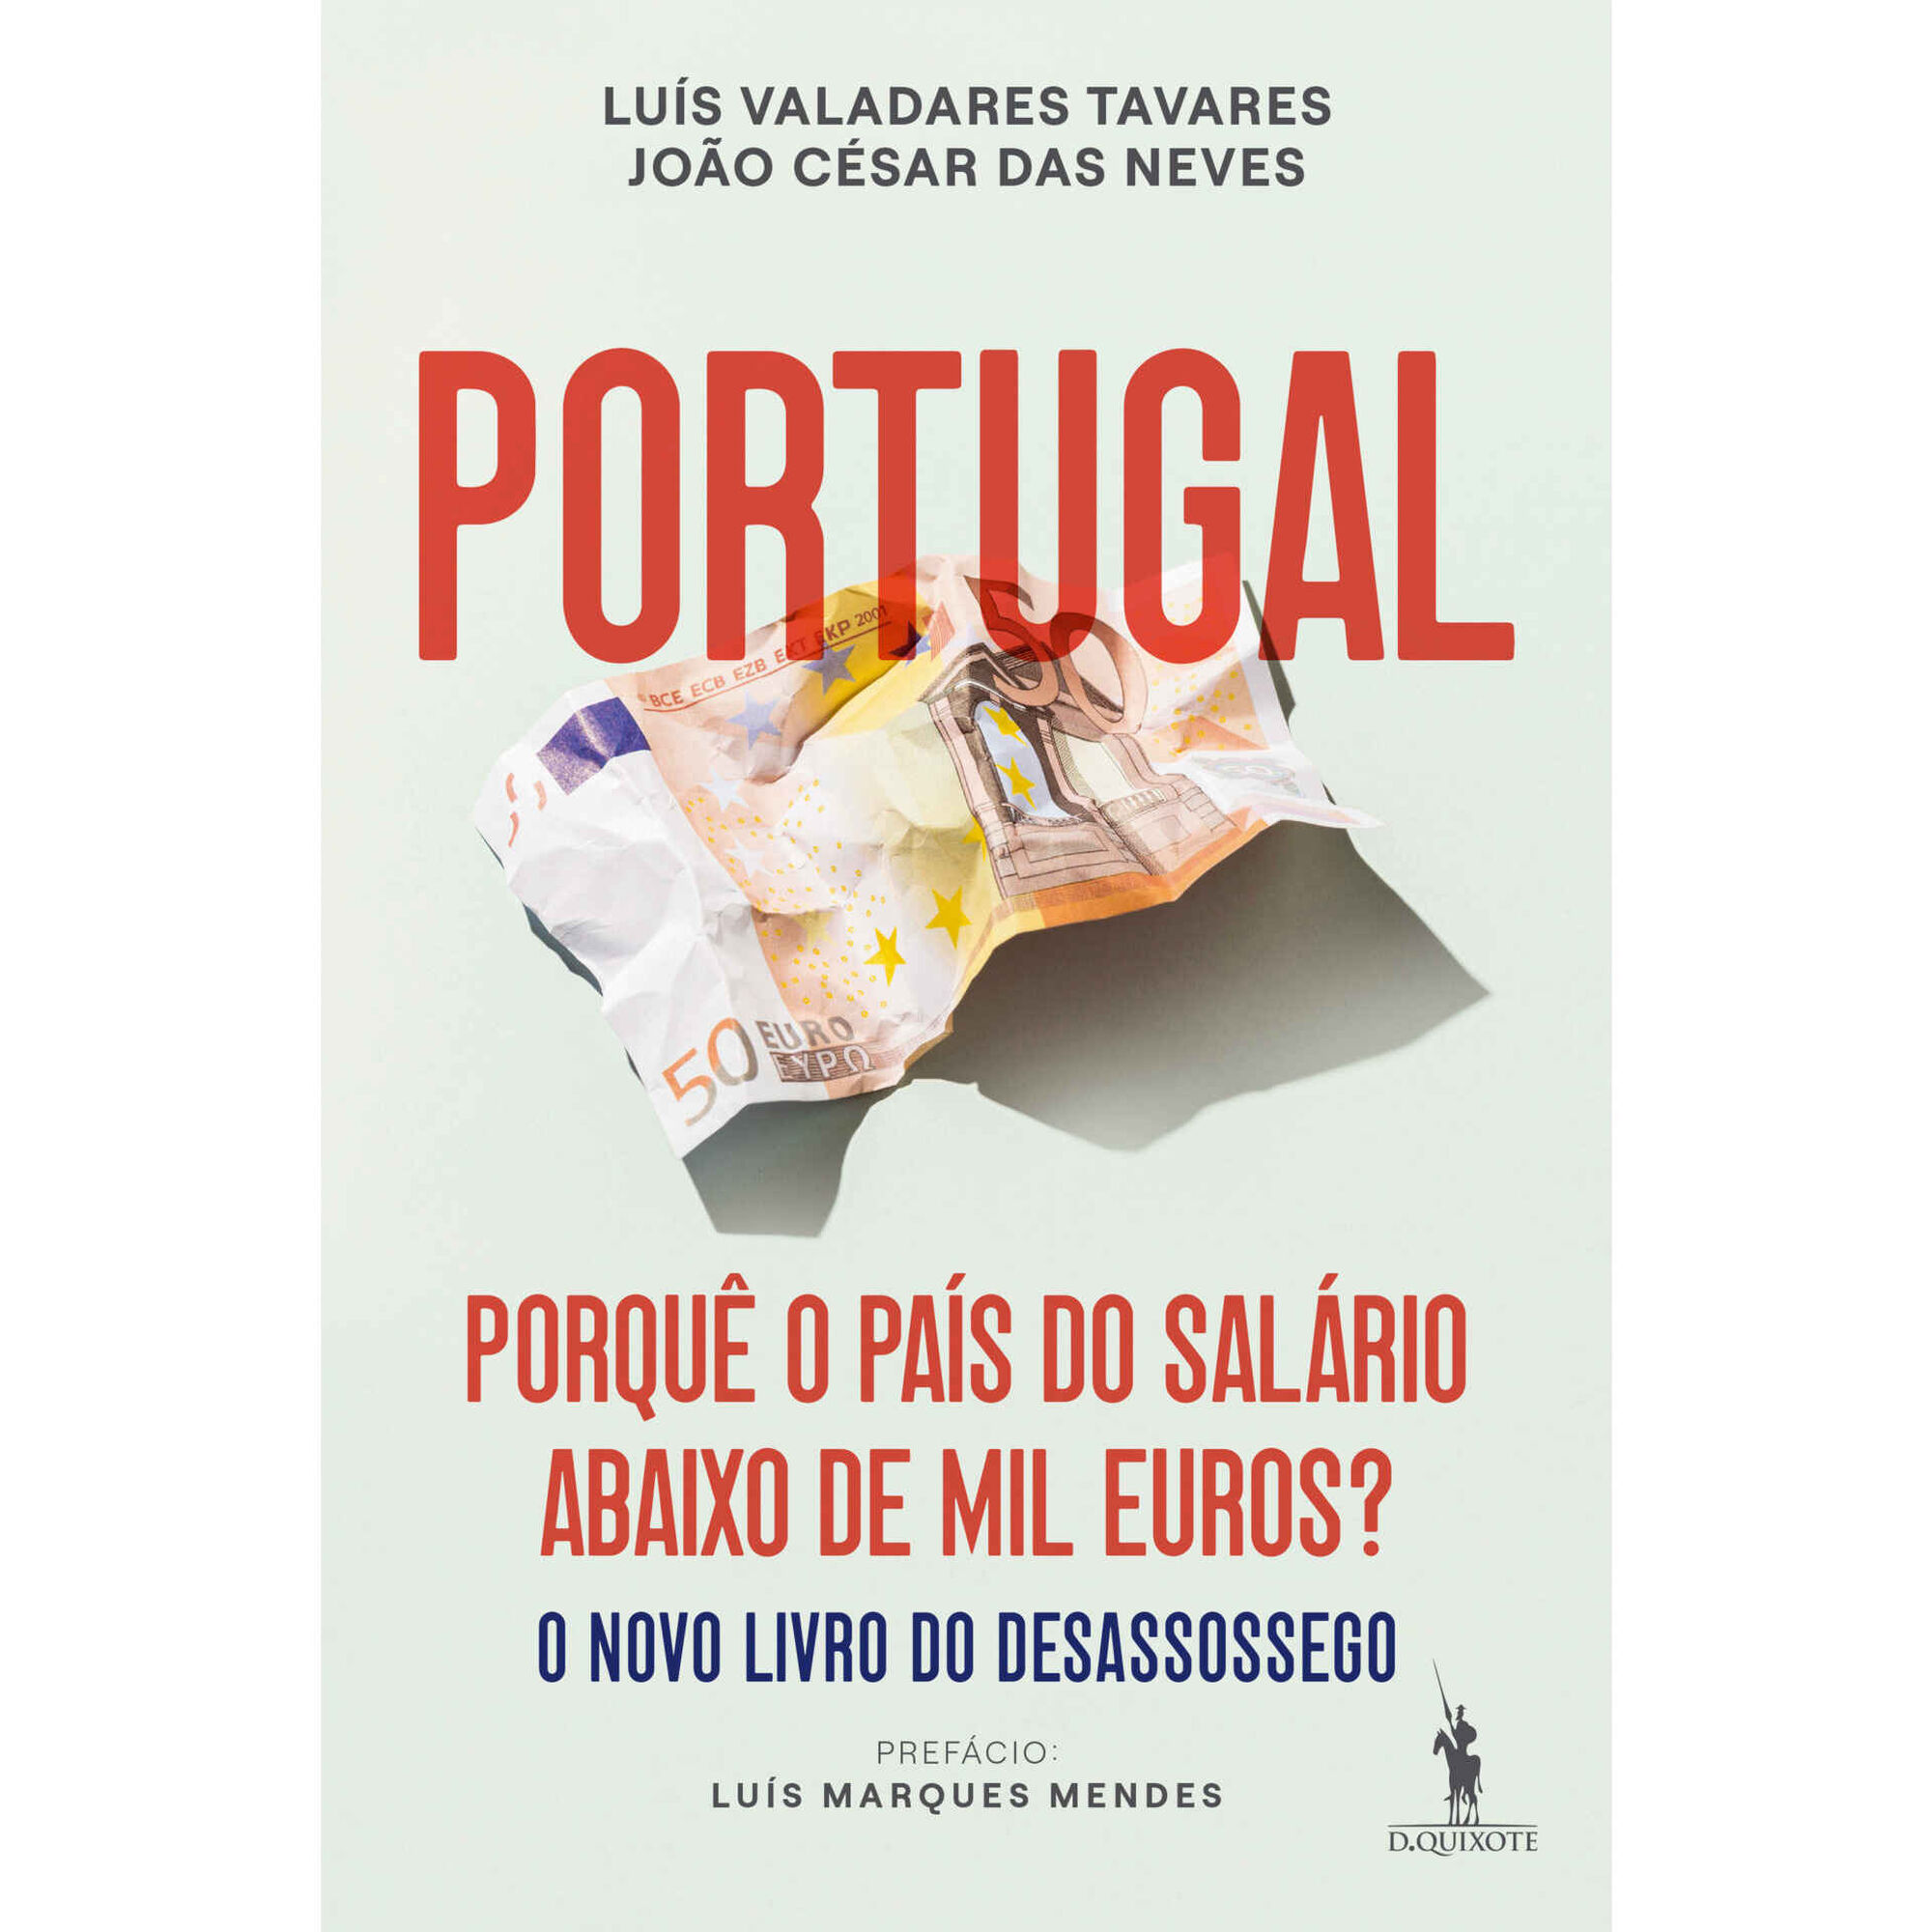 Portugal - Porquê o País do Salário Abaixo de Mil Euros?